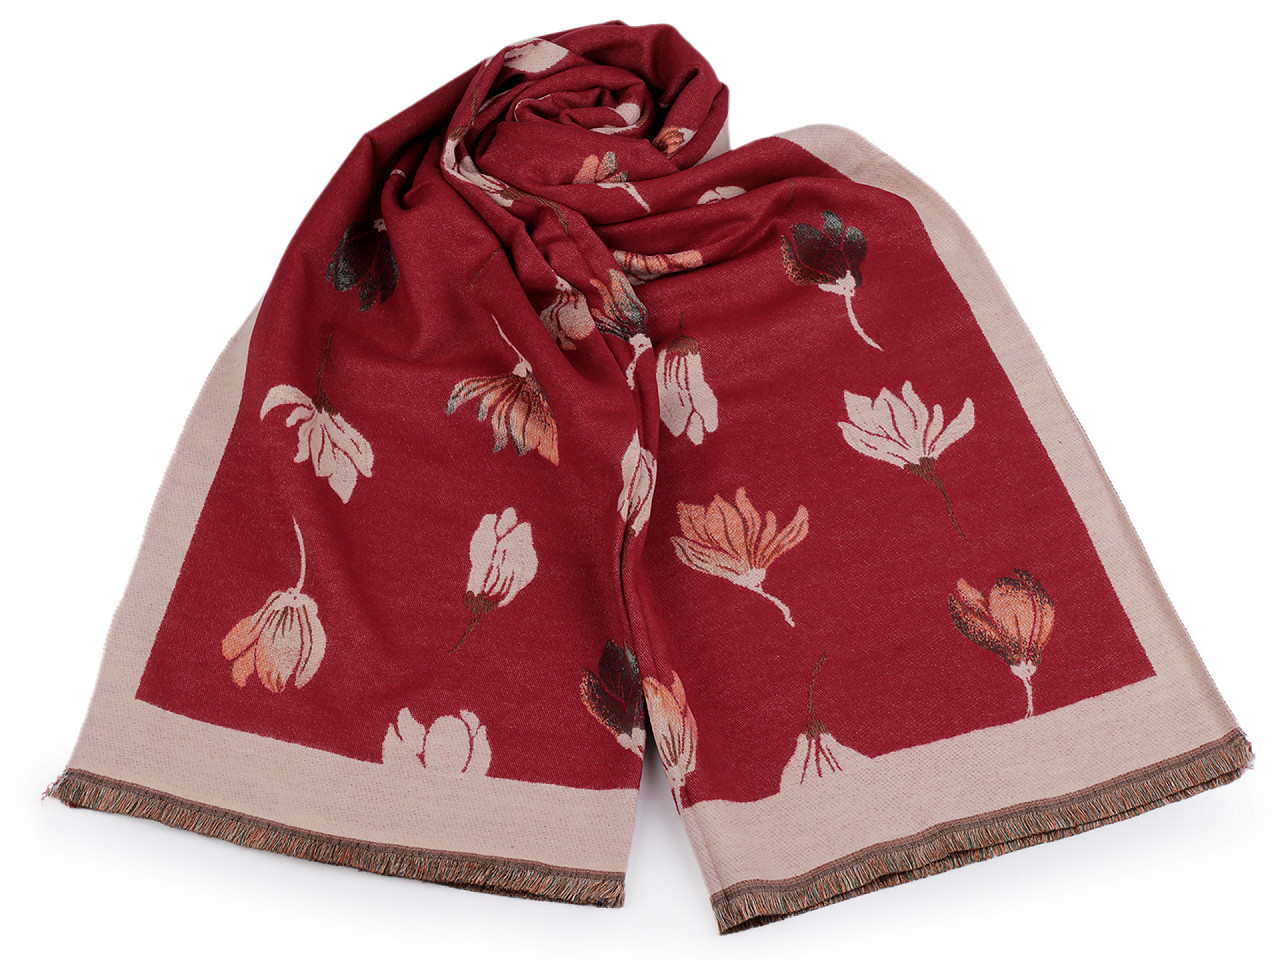 Šátek / šála typu kašmír s třásněmi, květy 65x190 cm, barva 14 červená béžová světlá